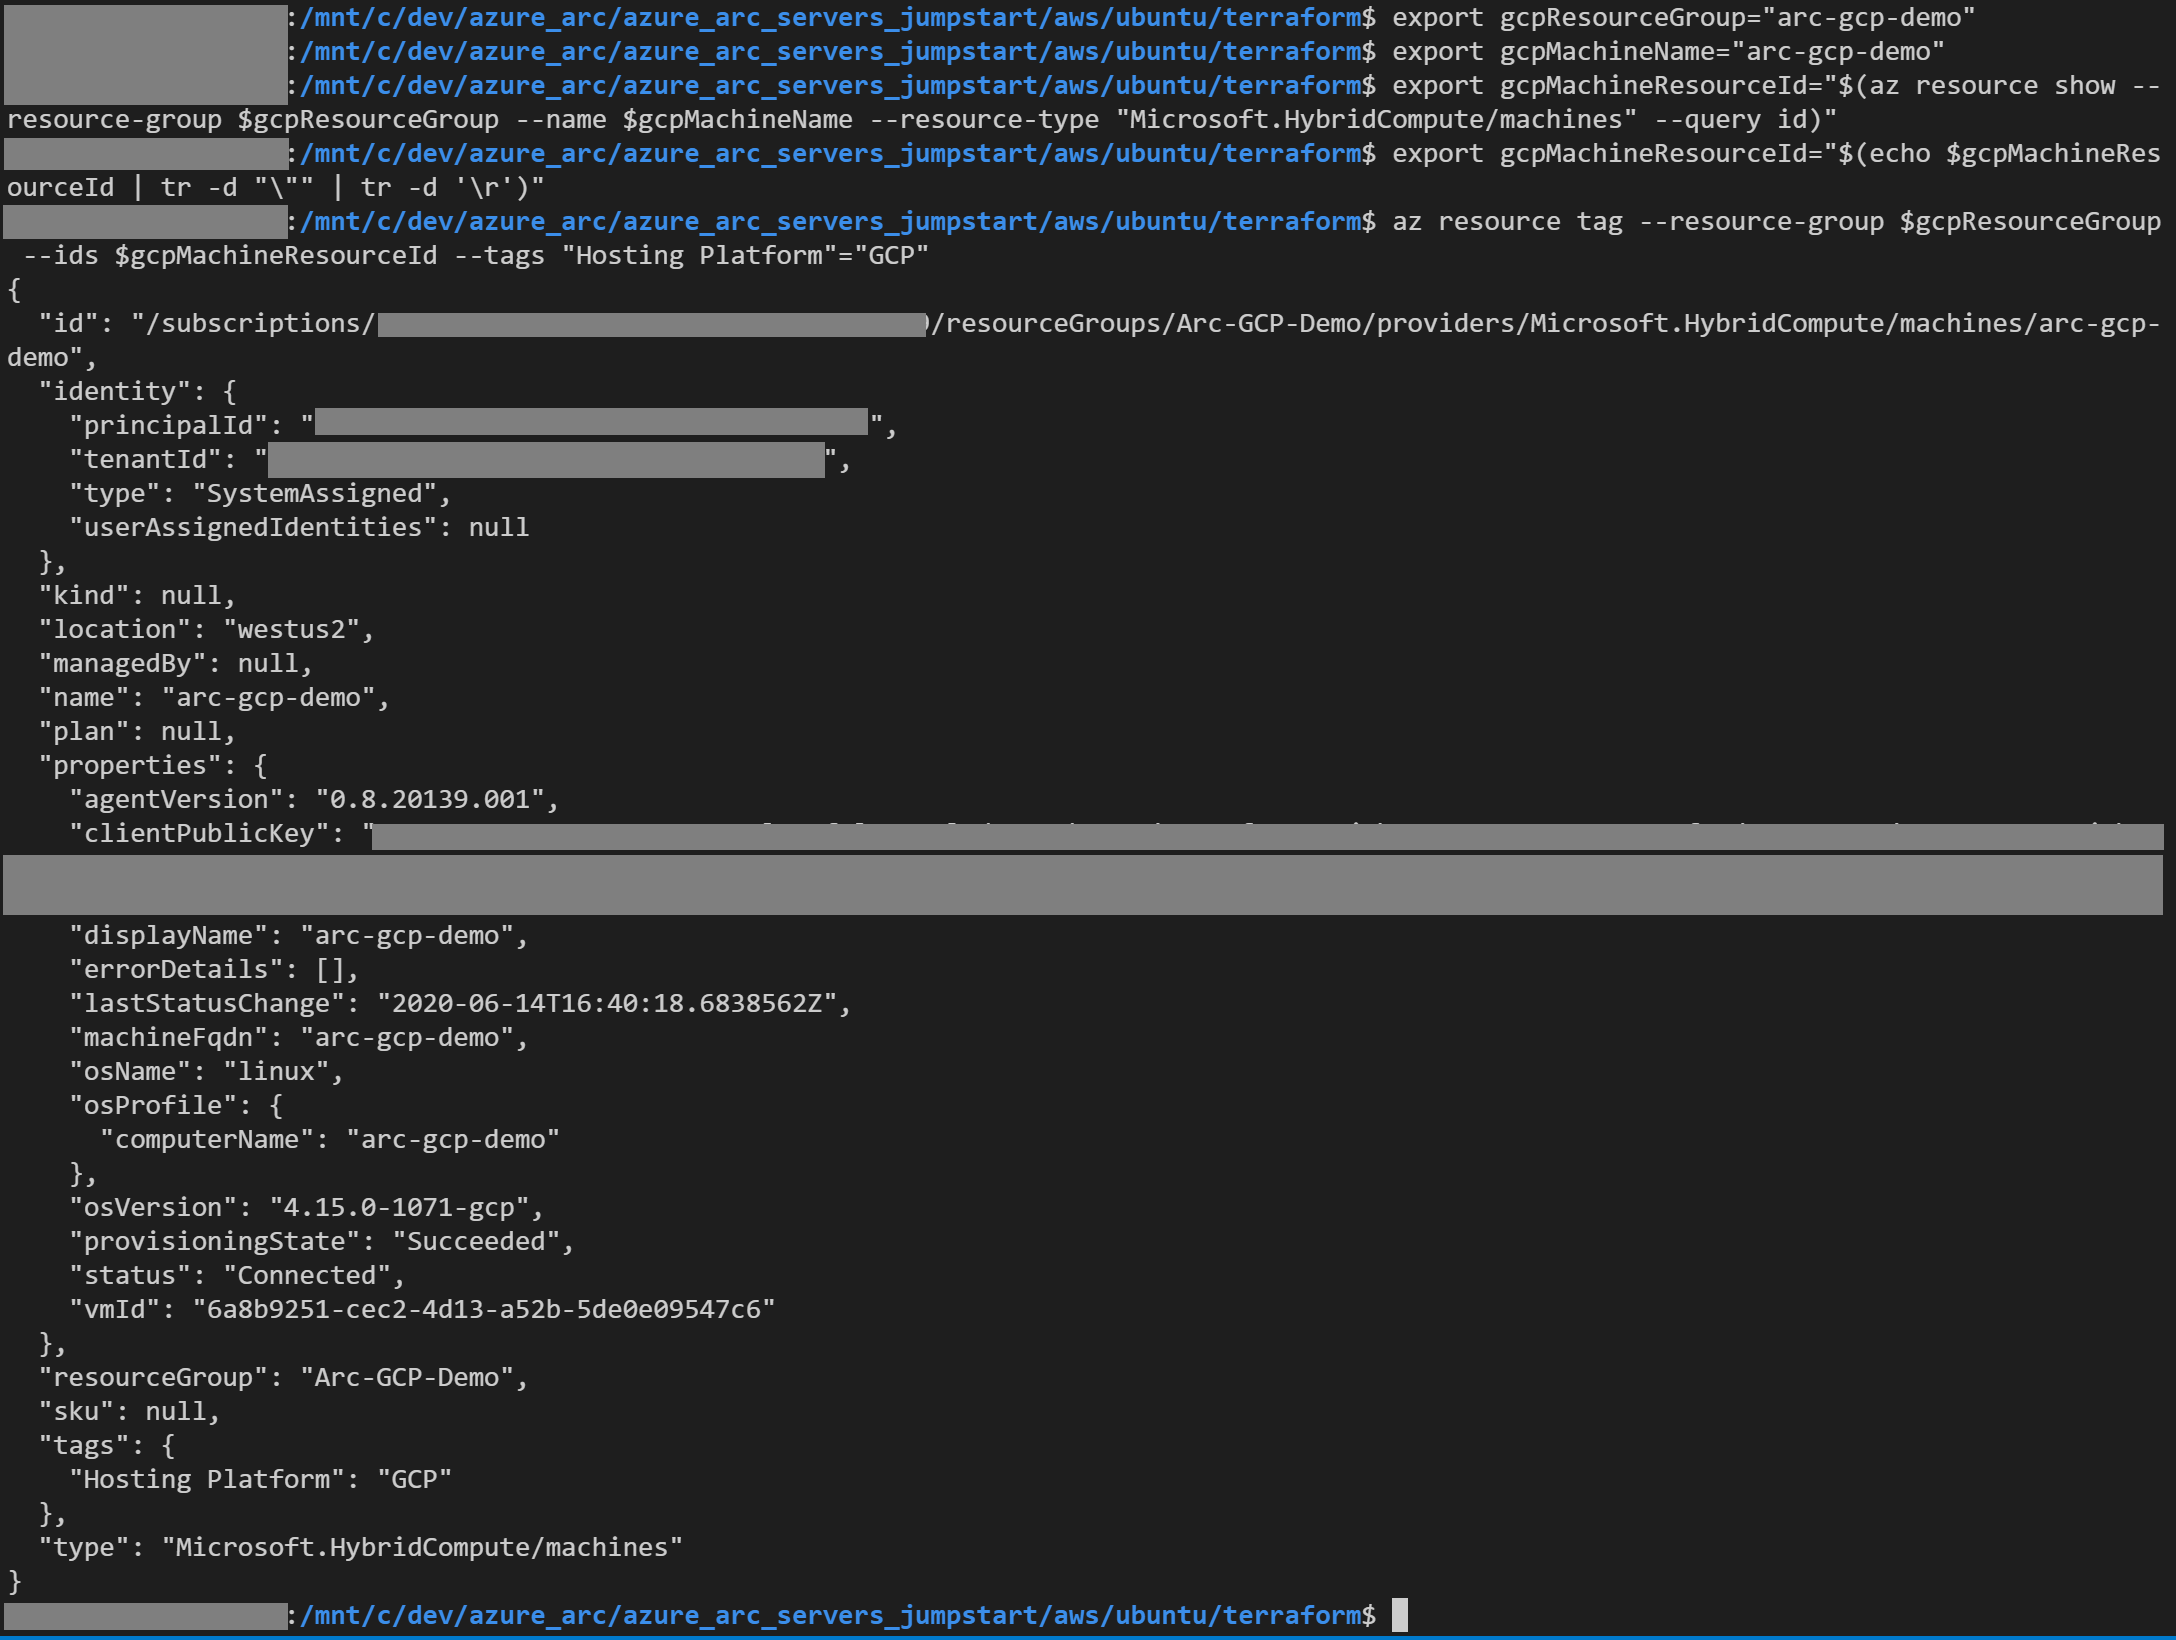 Screenshot di un altro output del comando az resource tag.